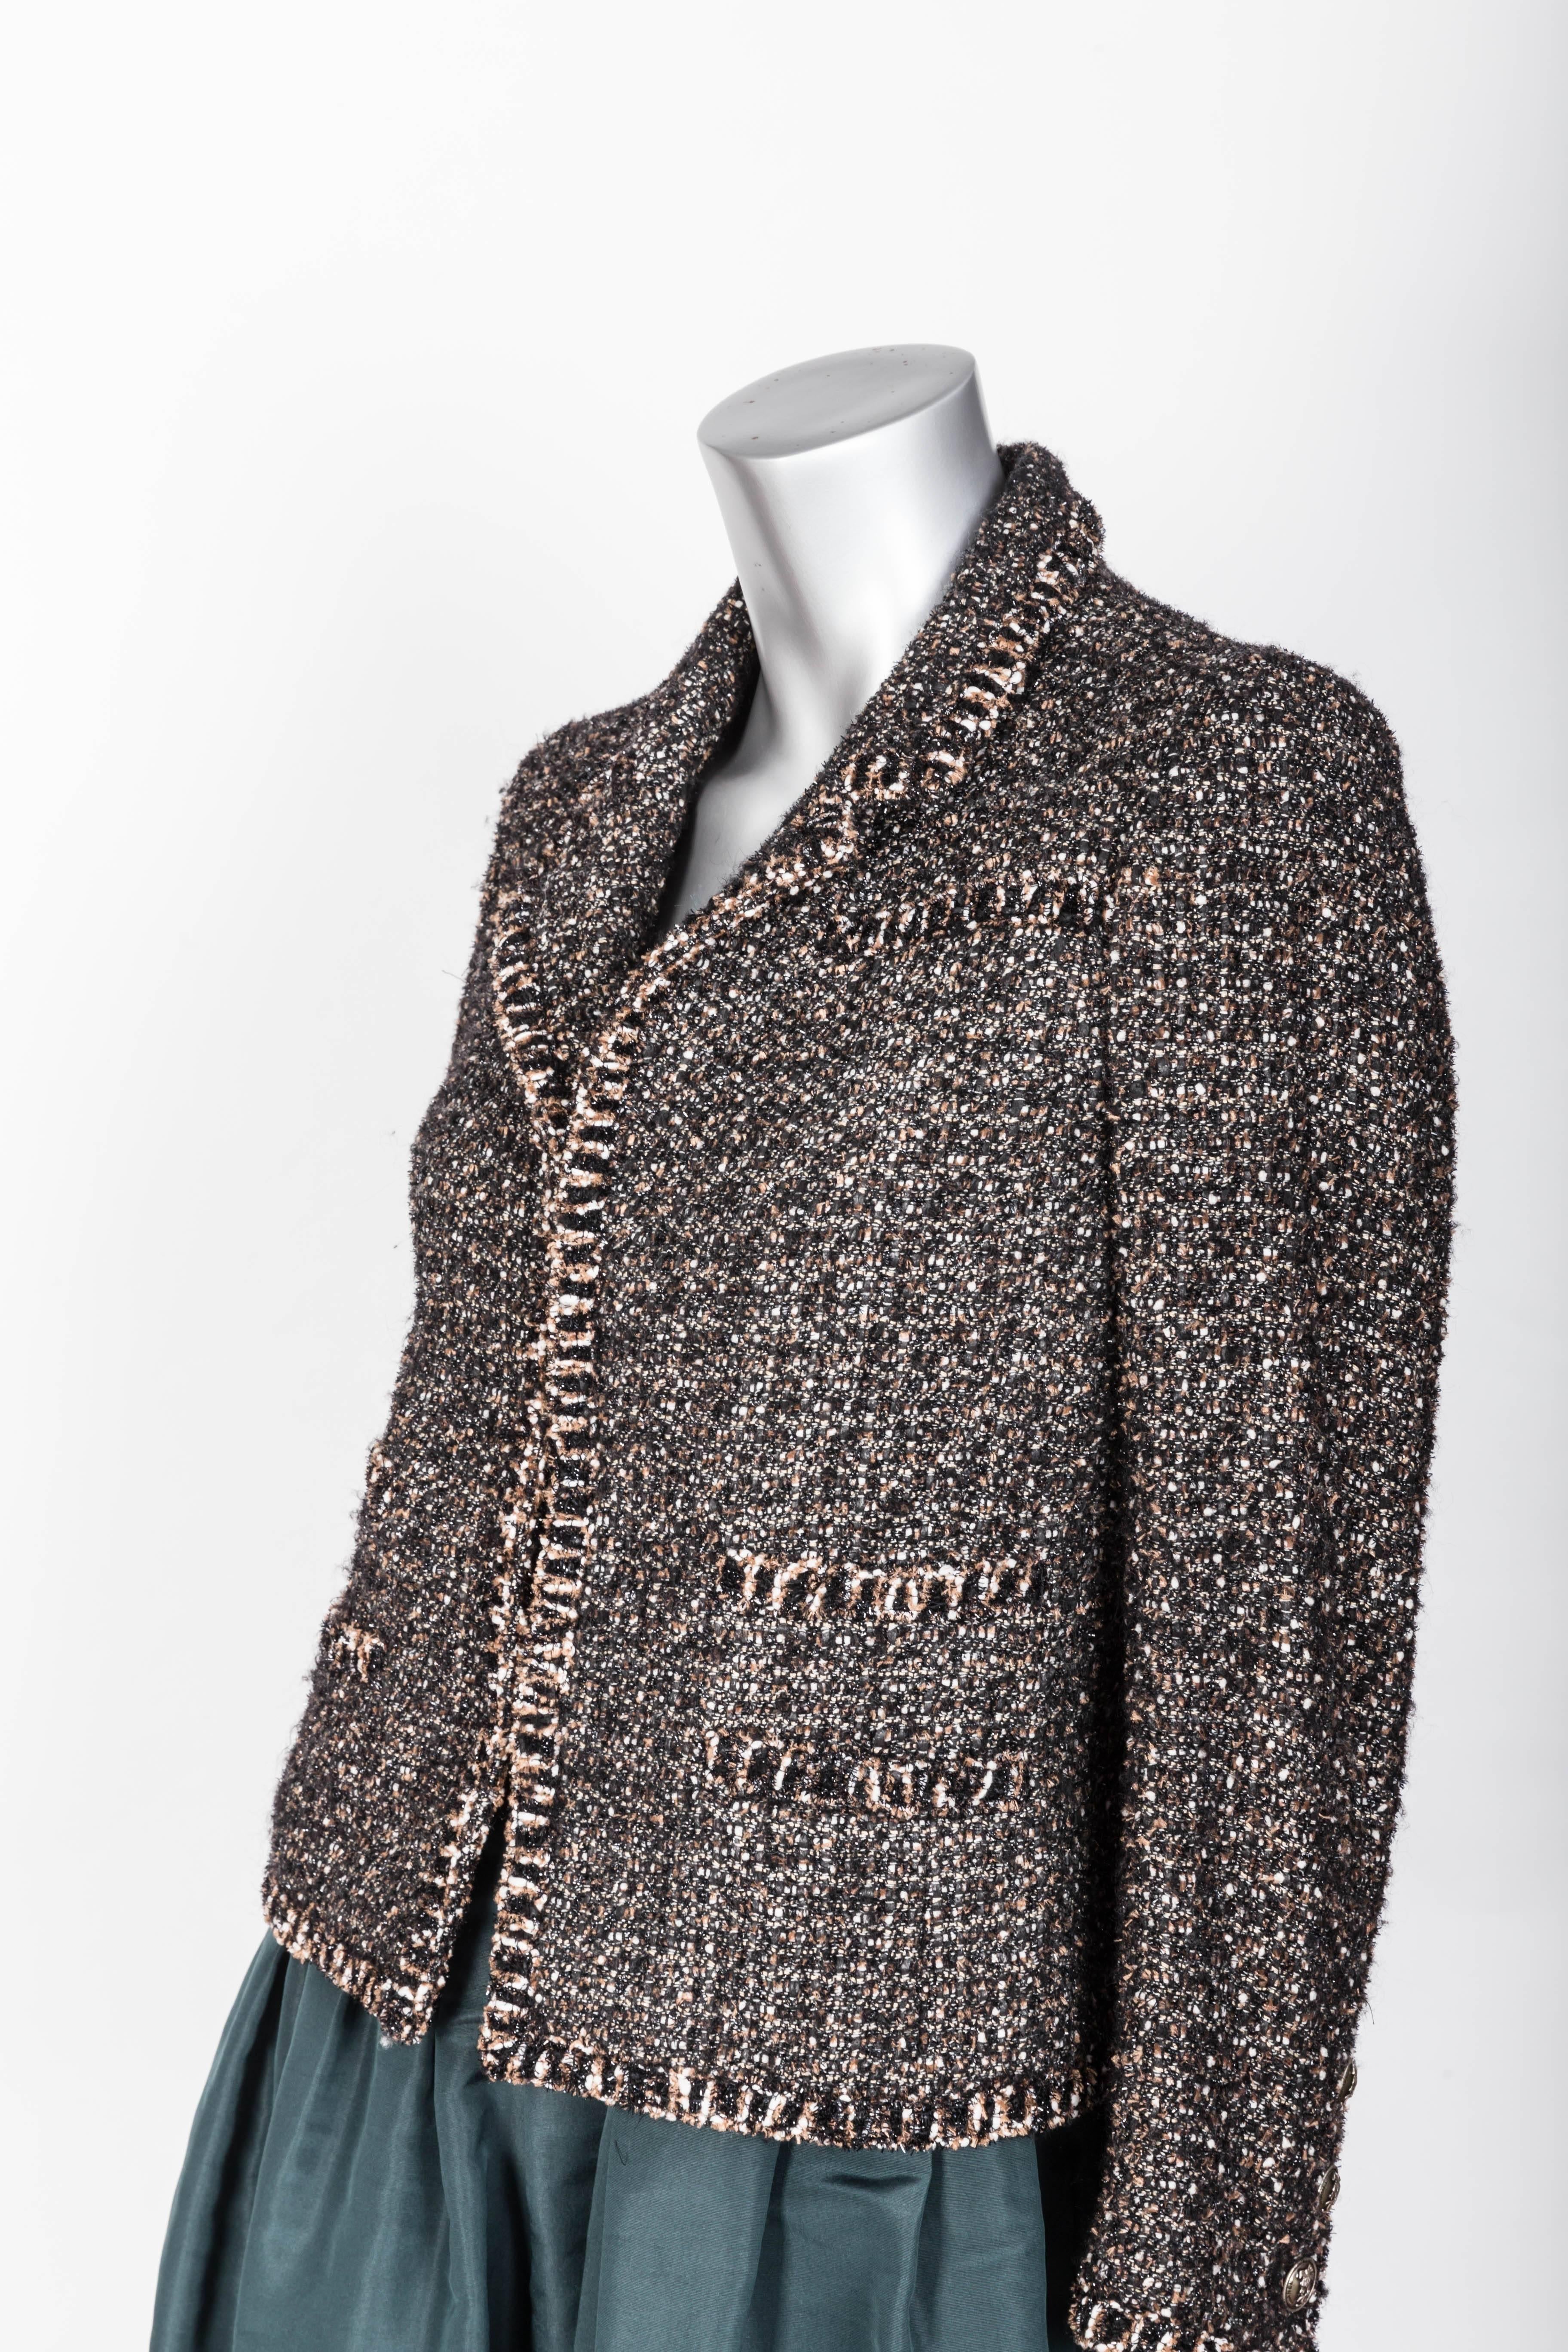 Black Chanel Metallic Tweed Jacket - 34